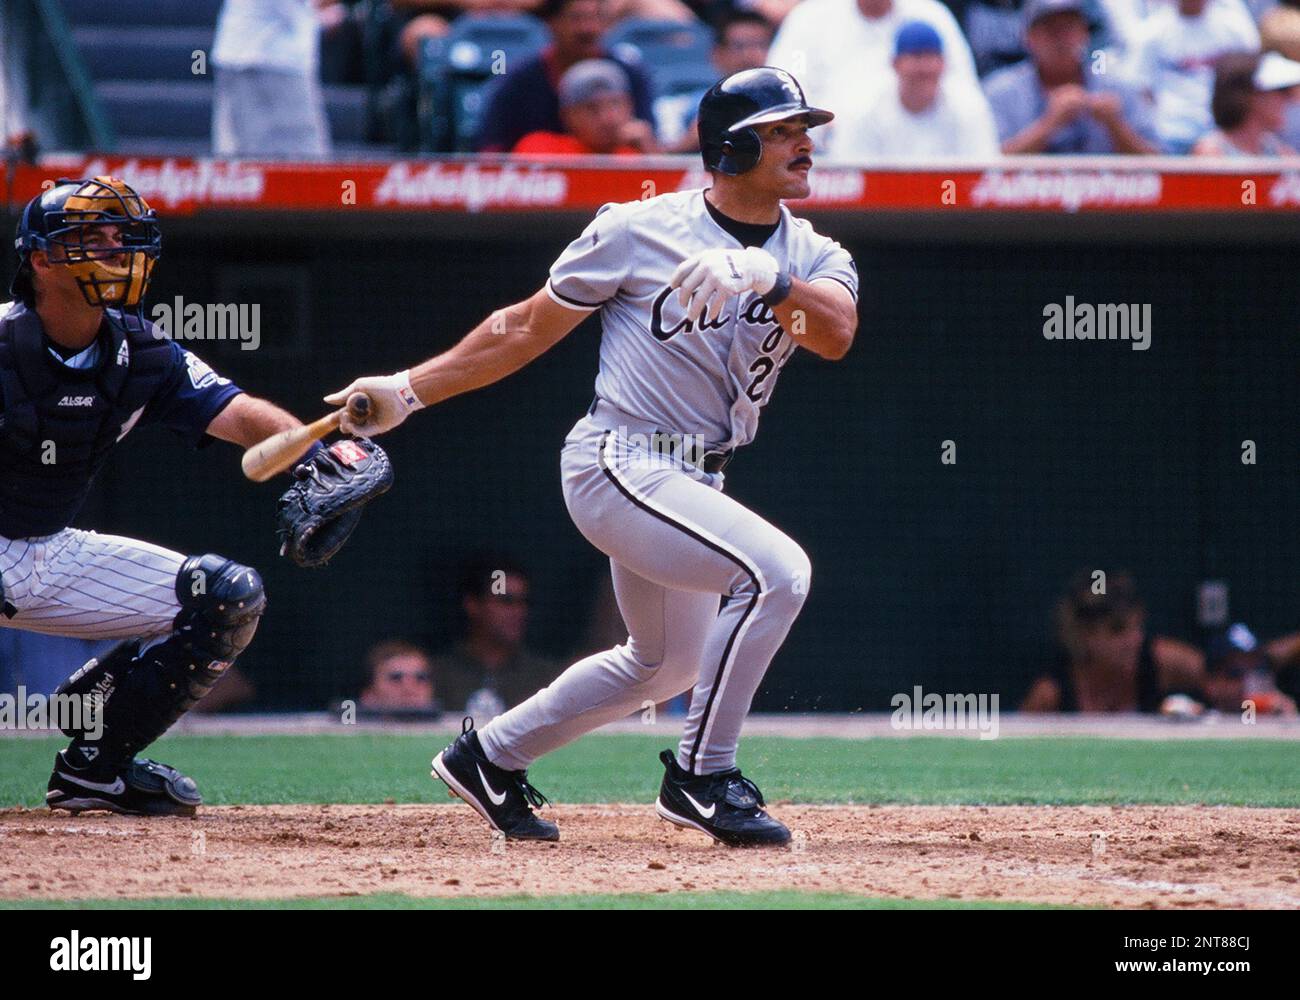 29 Jul. 2000: Chicago White Sox infielder Jose Valentin (22